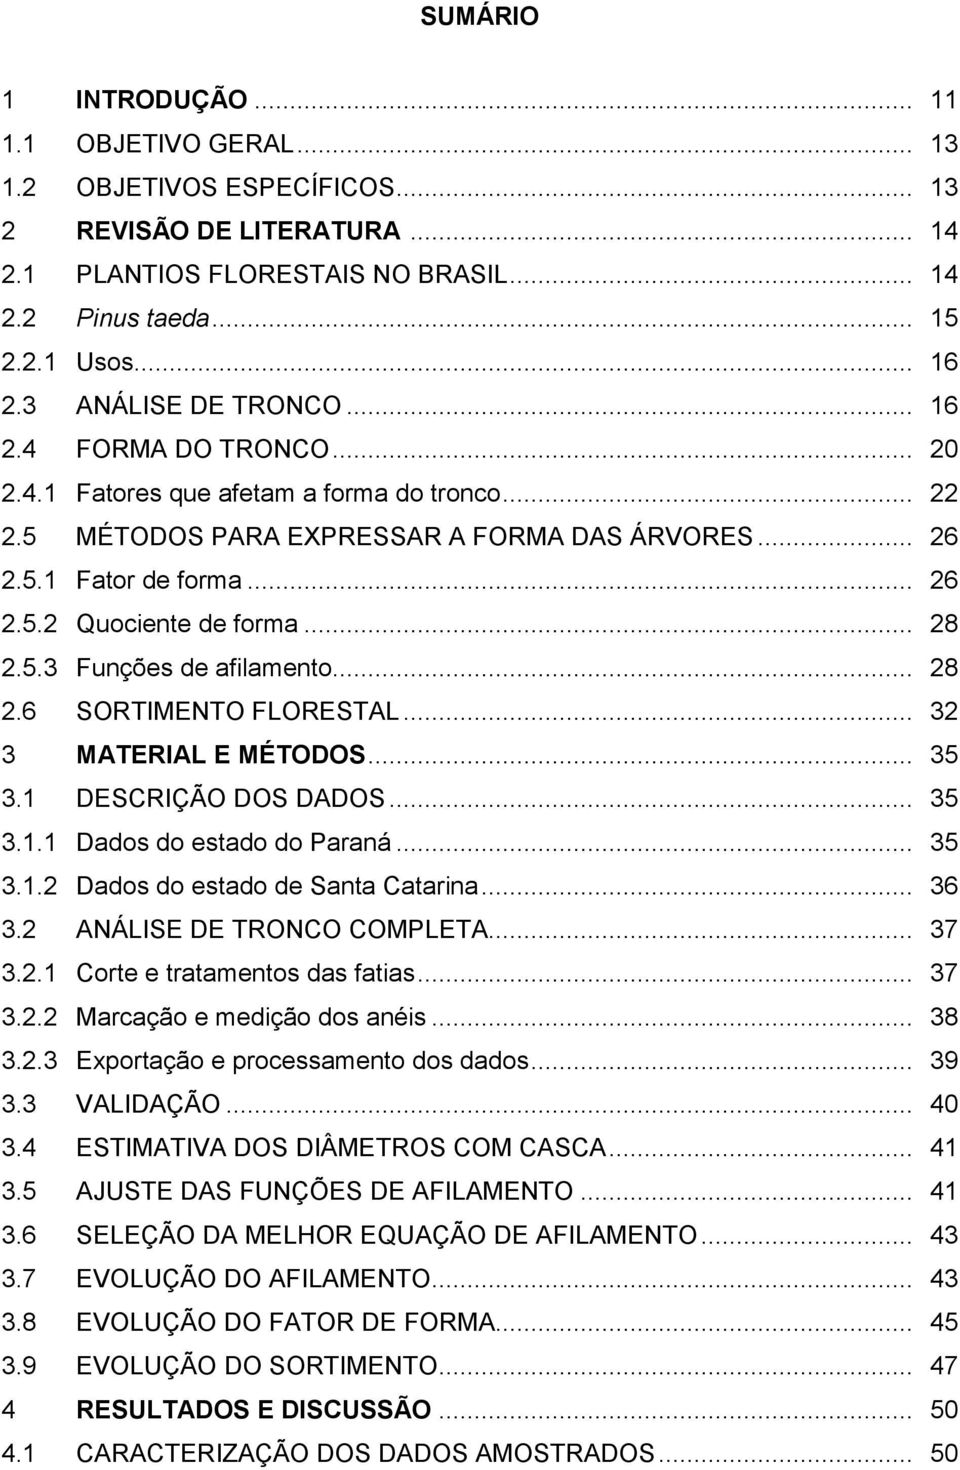 .. 28 2.5.3 Funções de afilamento... 28 2.6 SORTIMENTO FLORESTAL... 32 3 MATERIAL E MÉTODOS... 35 3.1 DESCRIÇÃO DOS DADOS... 35 3.1.1 Dados do estado do Paraná... 35 3.1.2 Dados do estado de Santa Catarina.